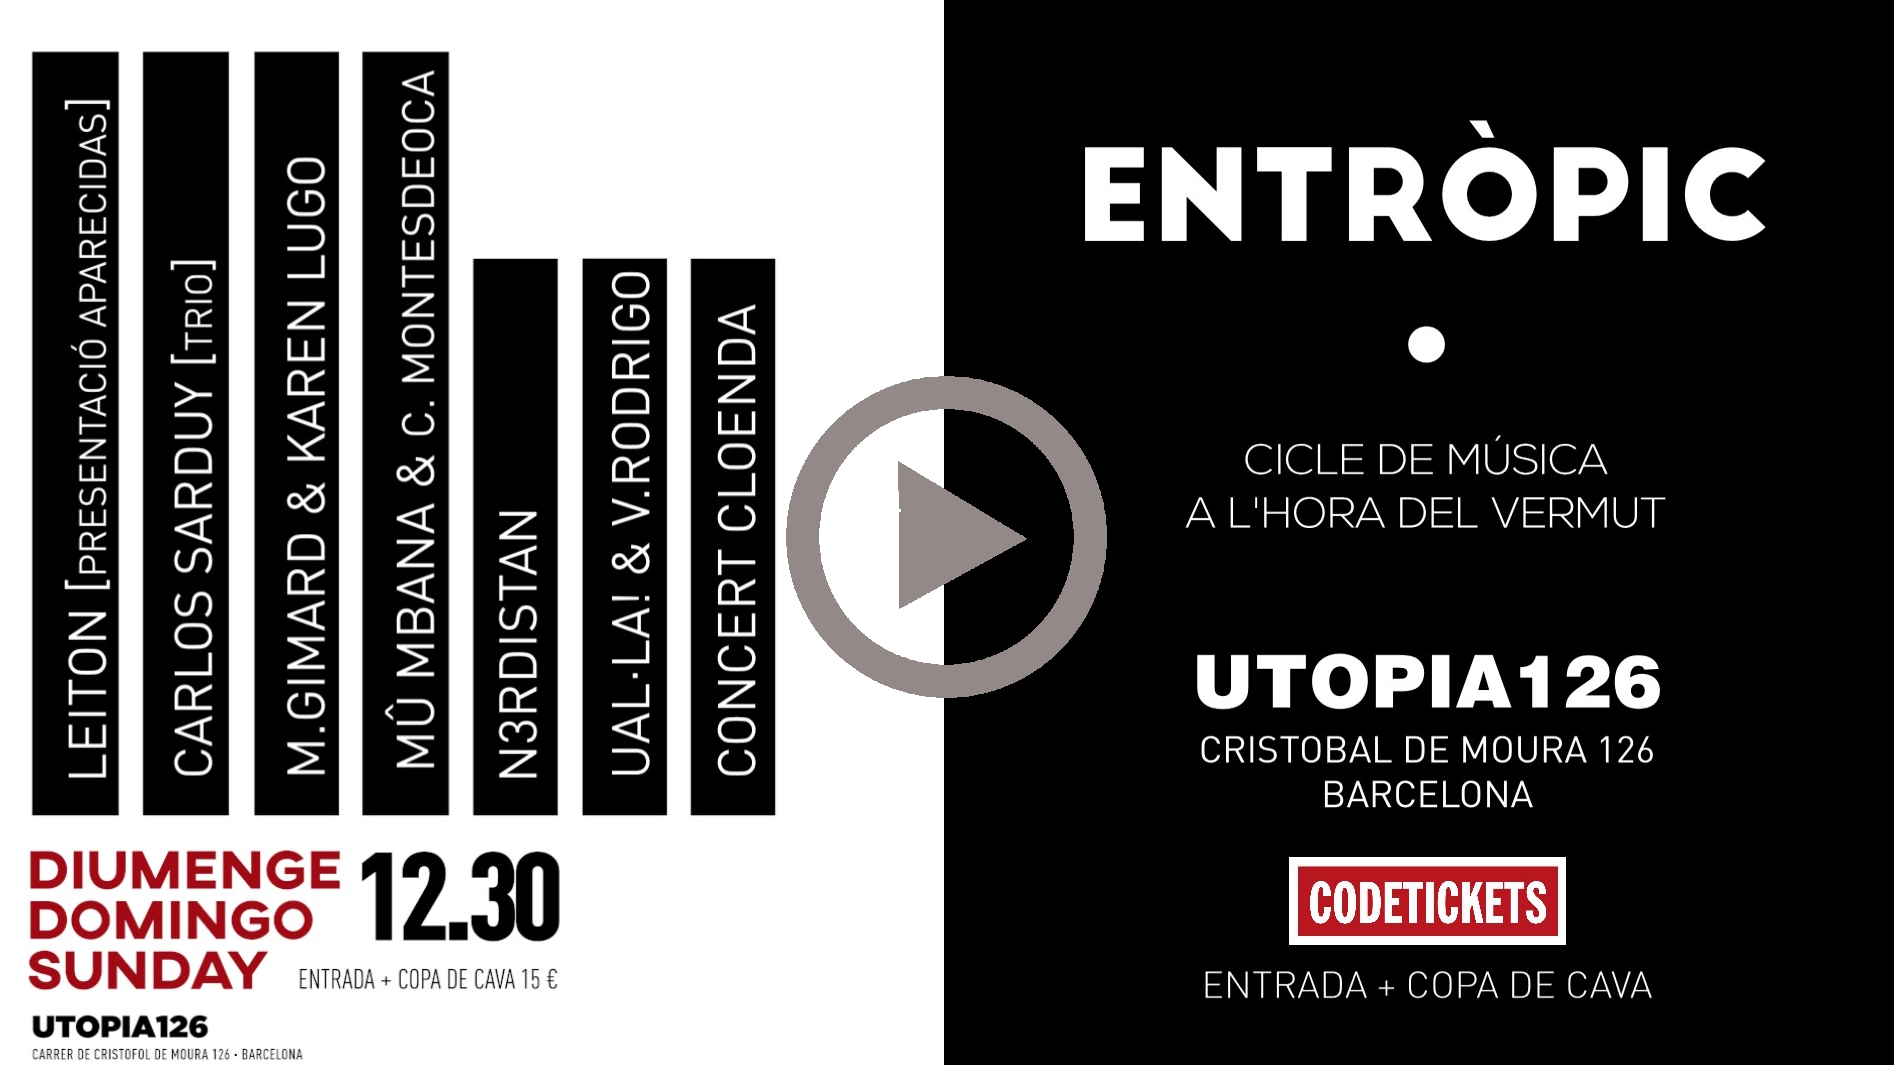 ENTROPIC_programacio_video.jpg